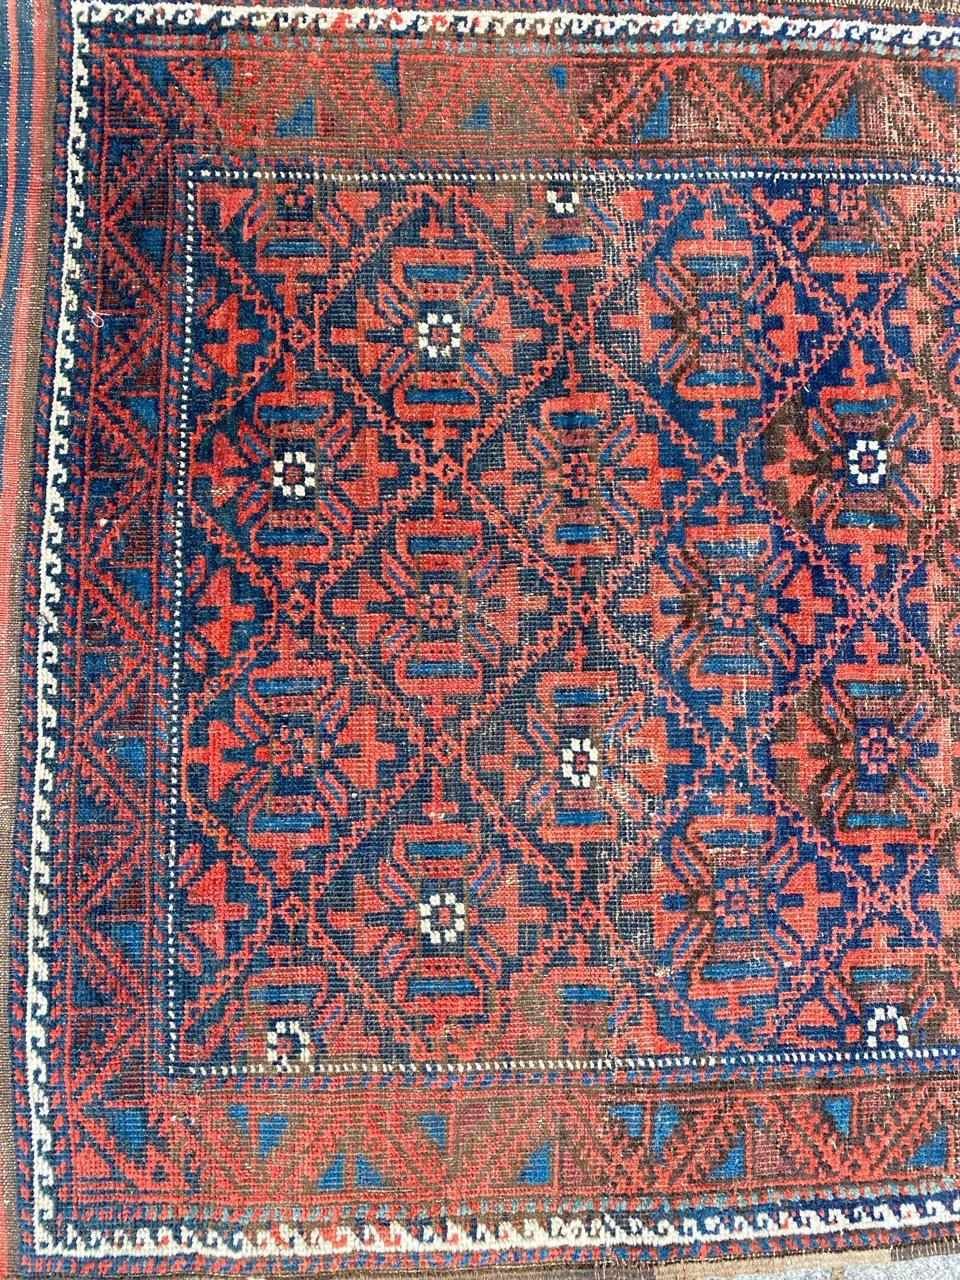 Schöner antiker Belutsch-Teppich mit geometrischem Stammesmuster und schönen natürlichen Farben, komplett handgeknüpft mit Wollsamt auf Wollfond.

✨✨✨
